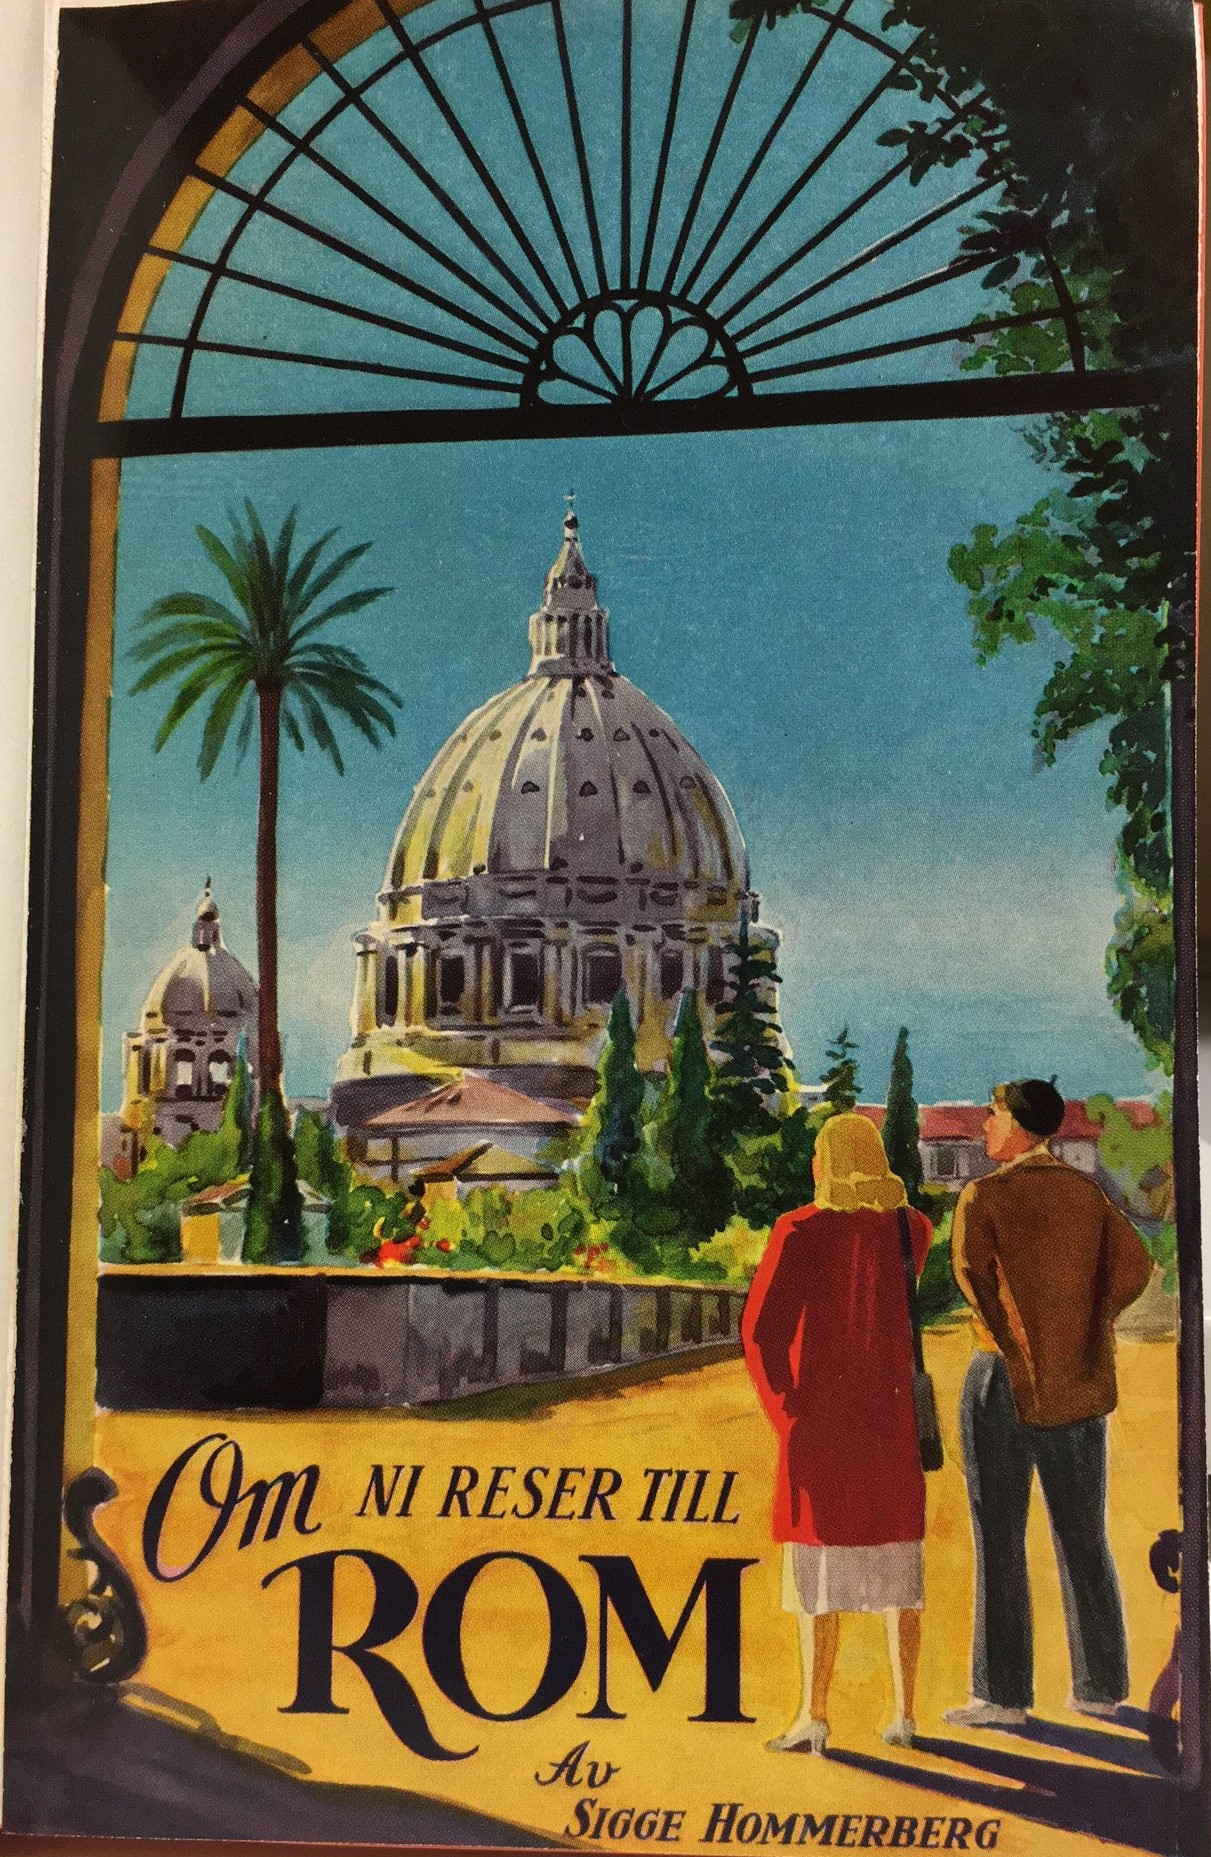 Bokomslag i färg där en man och en kvinna tittar ut över Peterskyrkan i Rom.